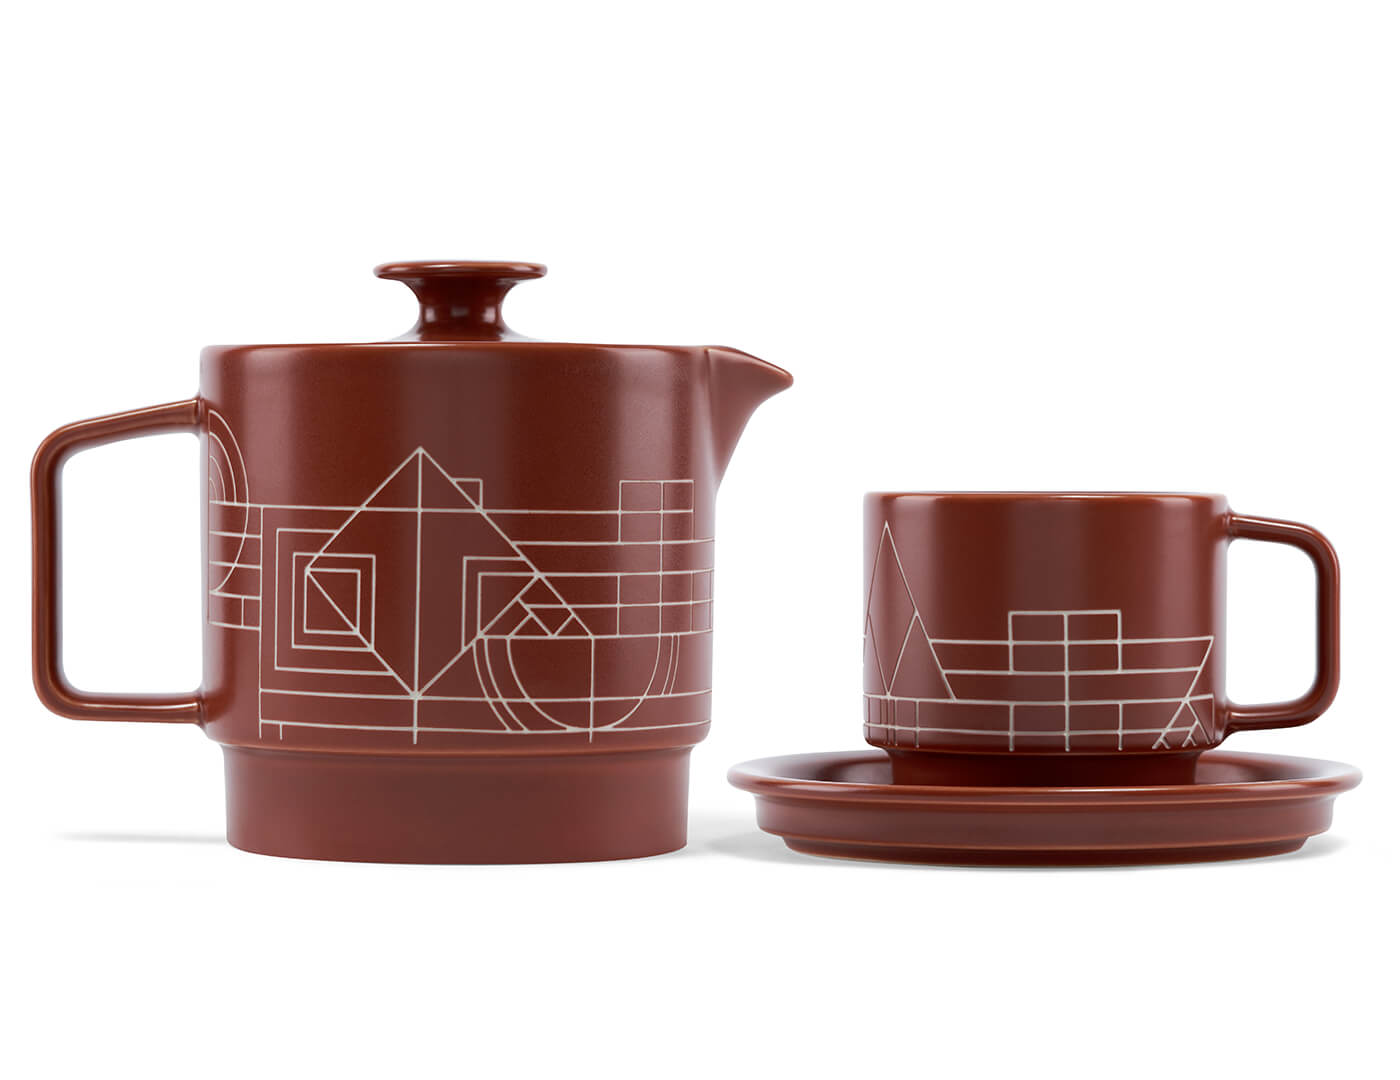 Terra Tea Set bundle with teapot and teacup with saucer